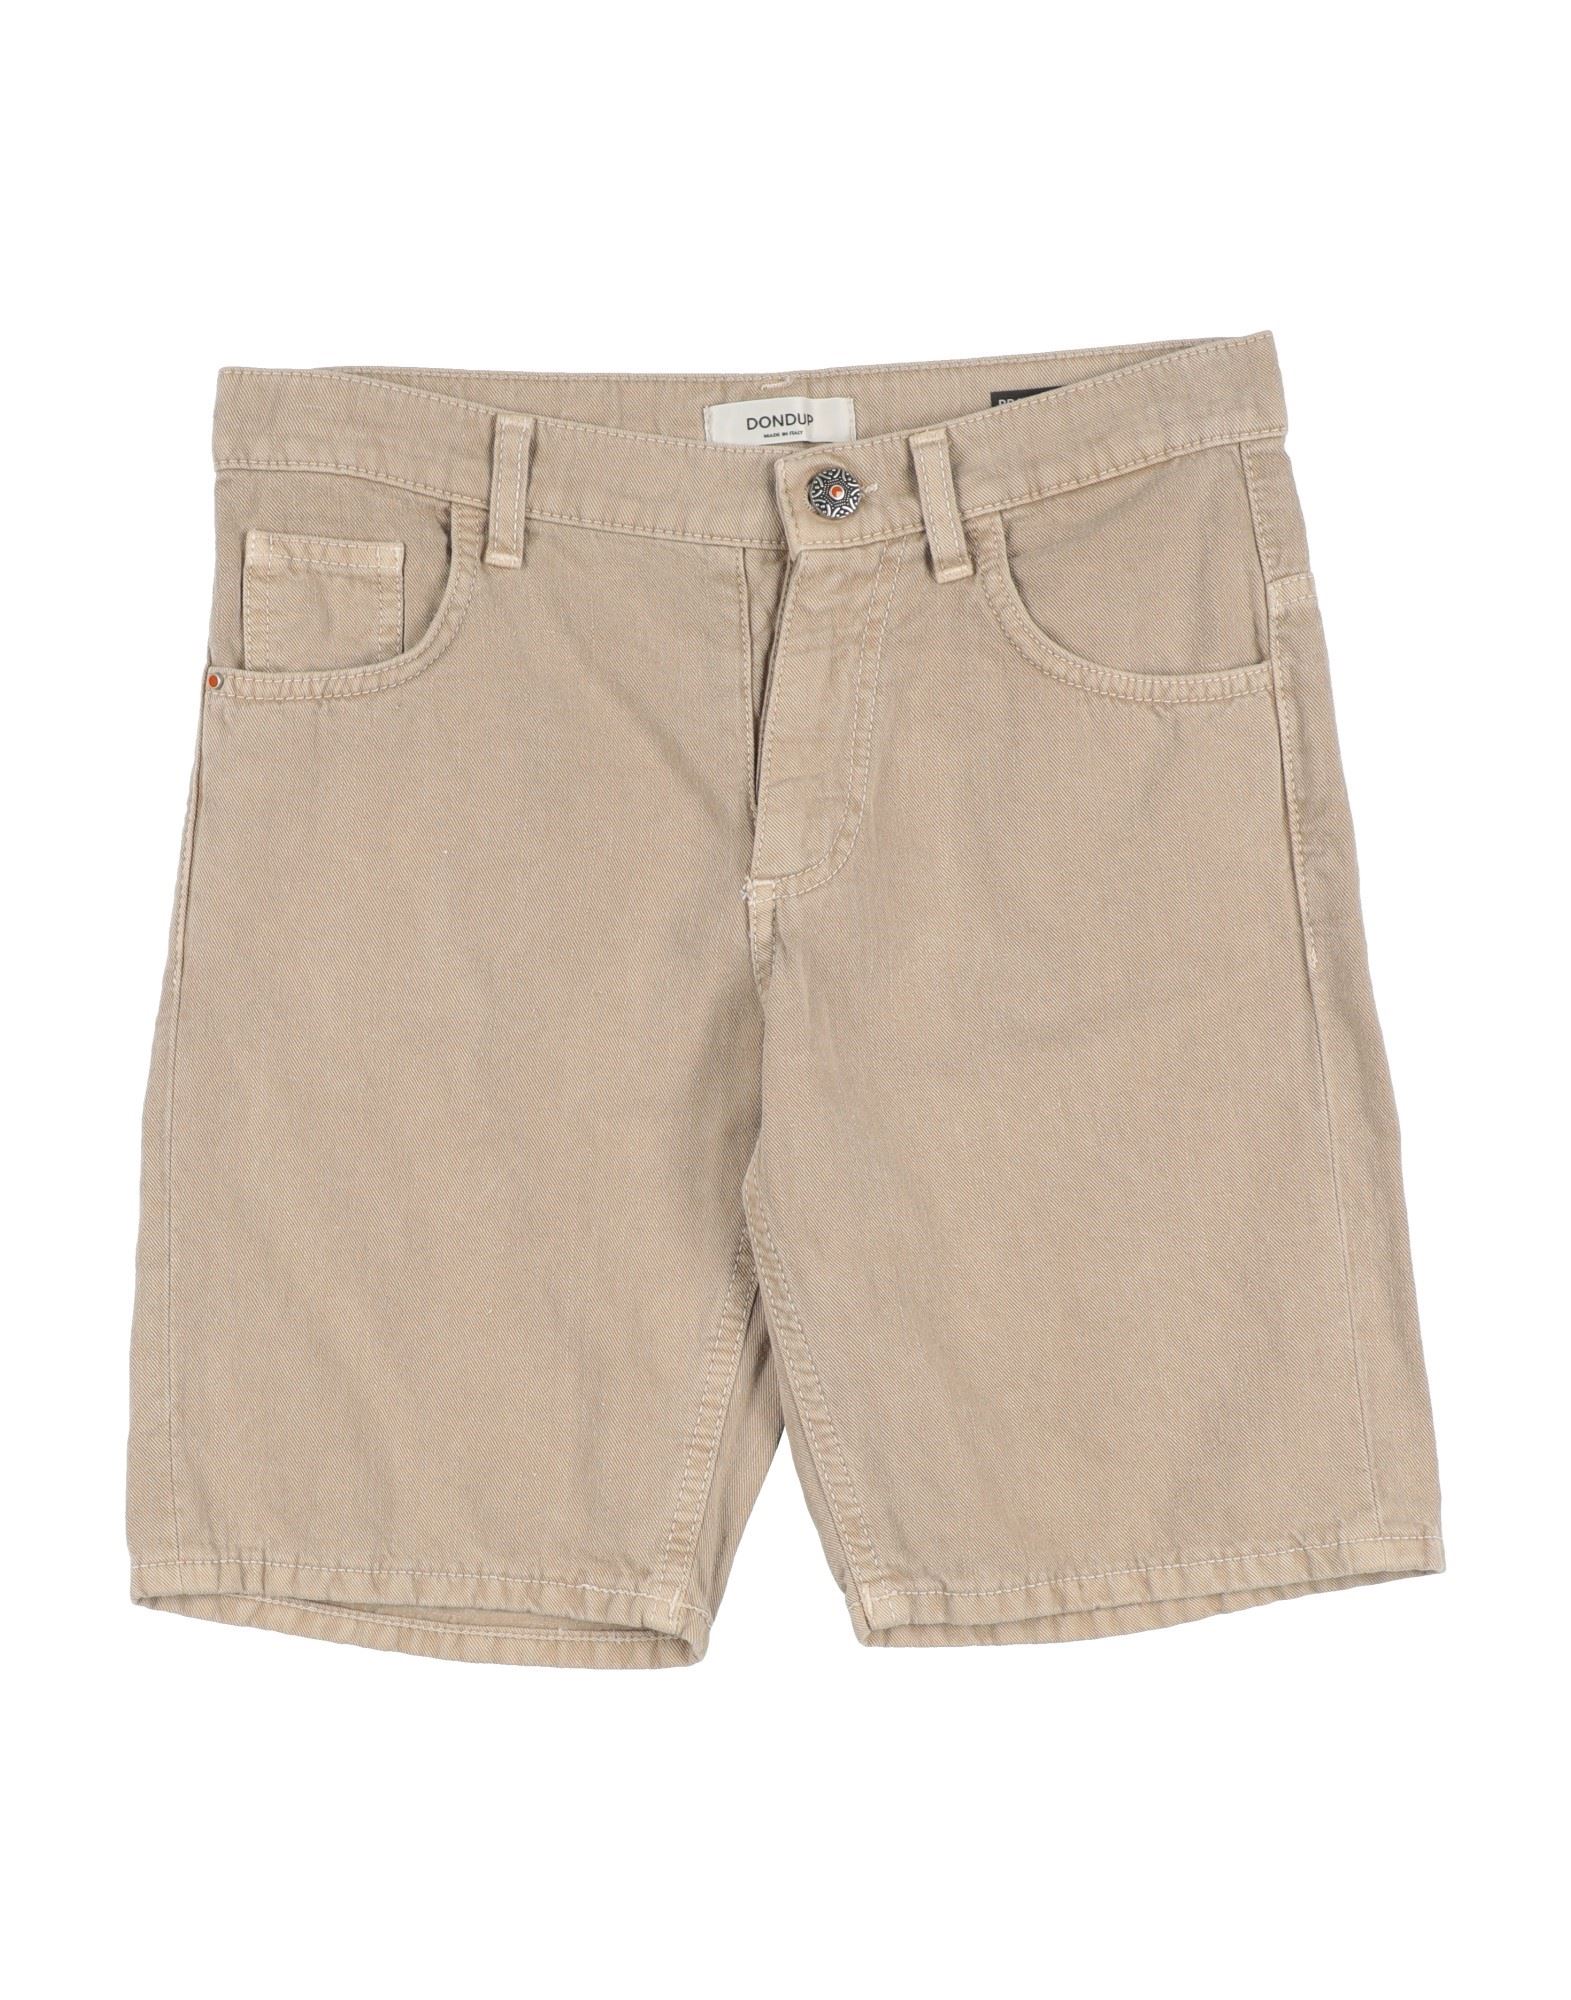 Dondup Kids' Denim Shorts In Beige